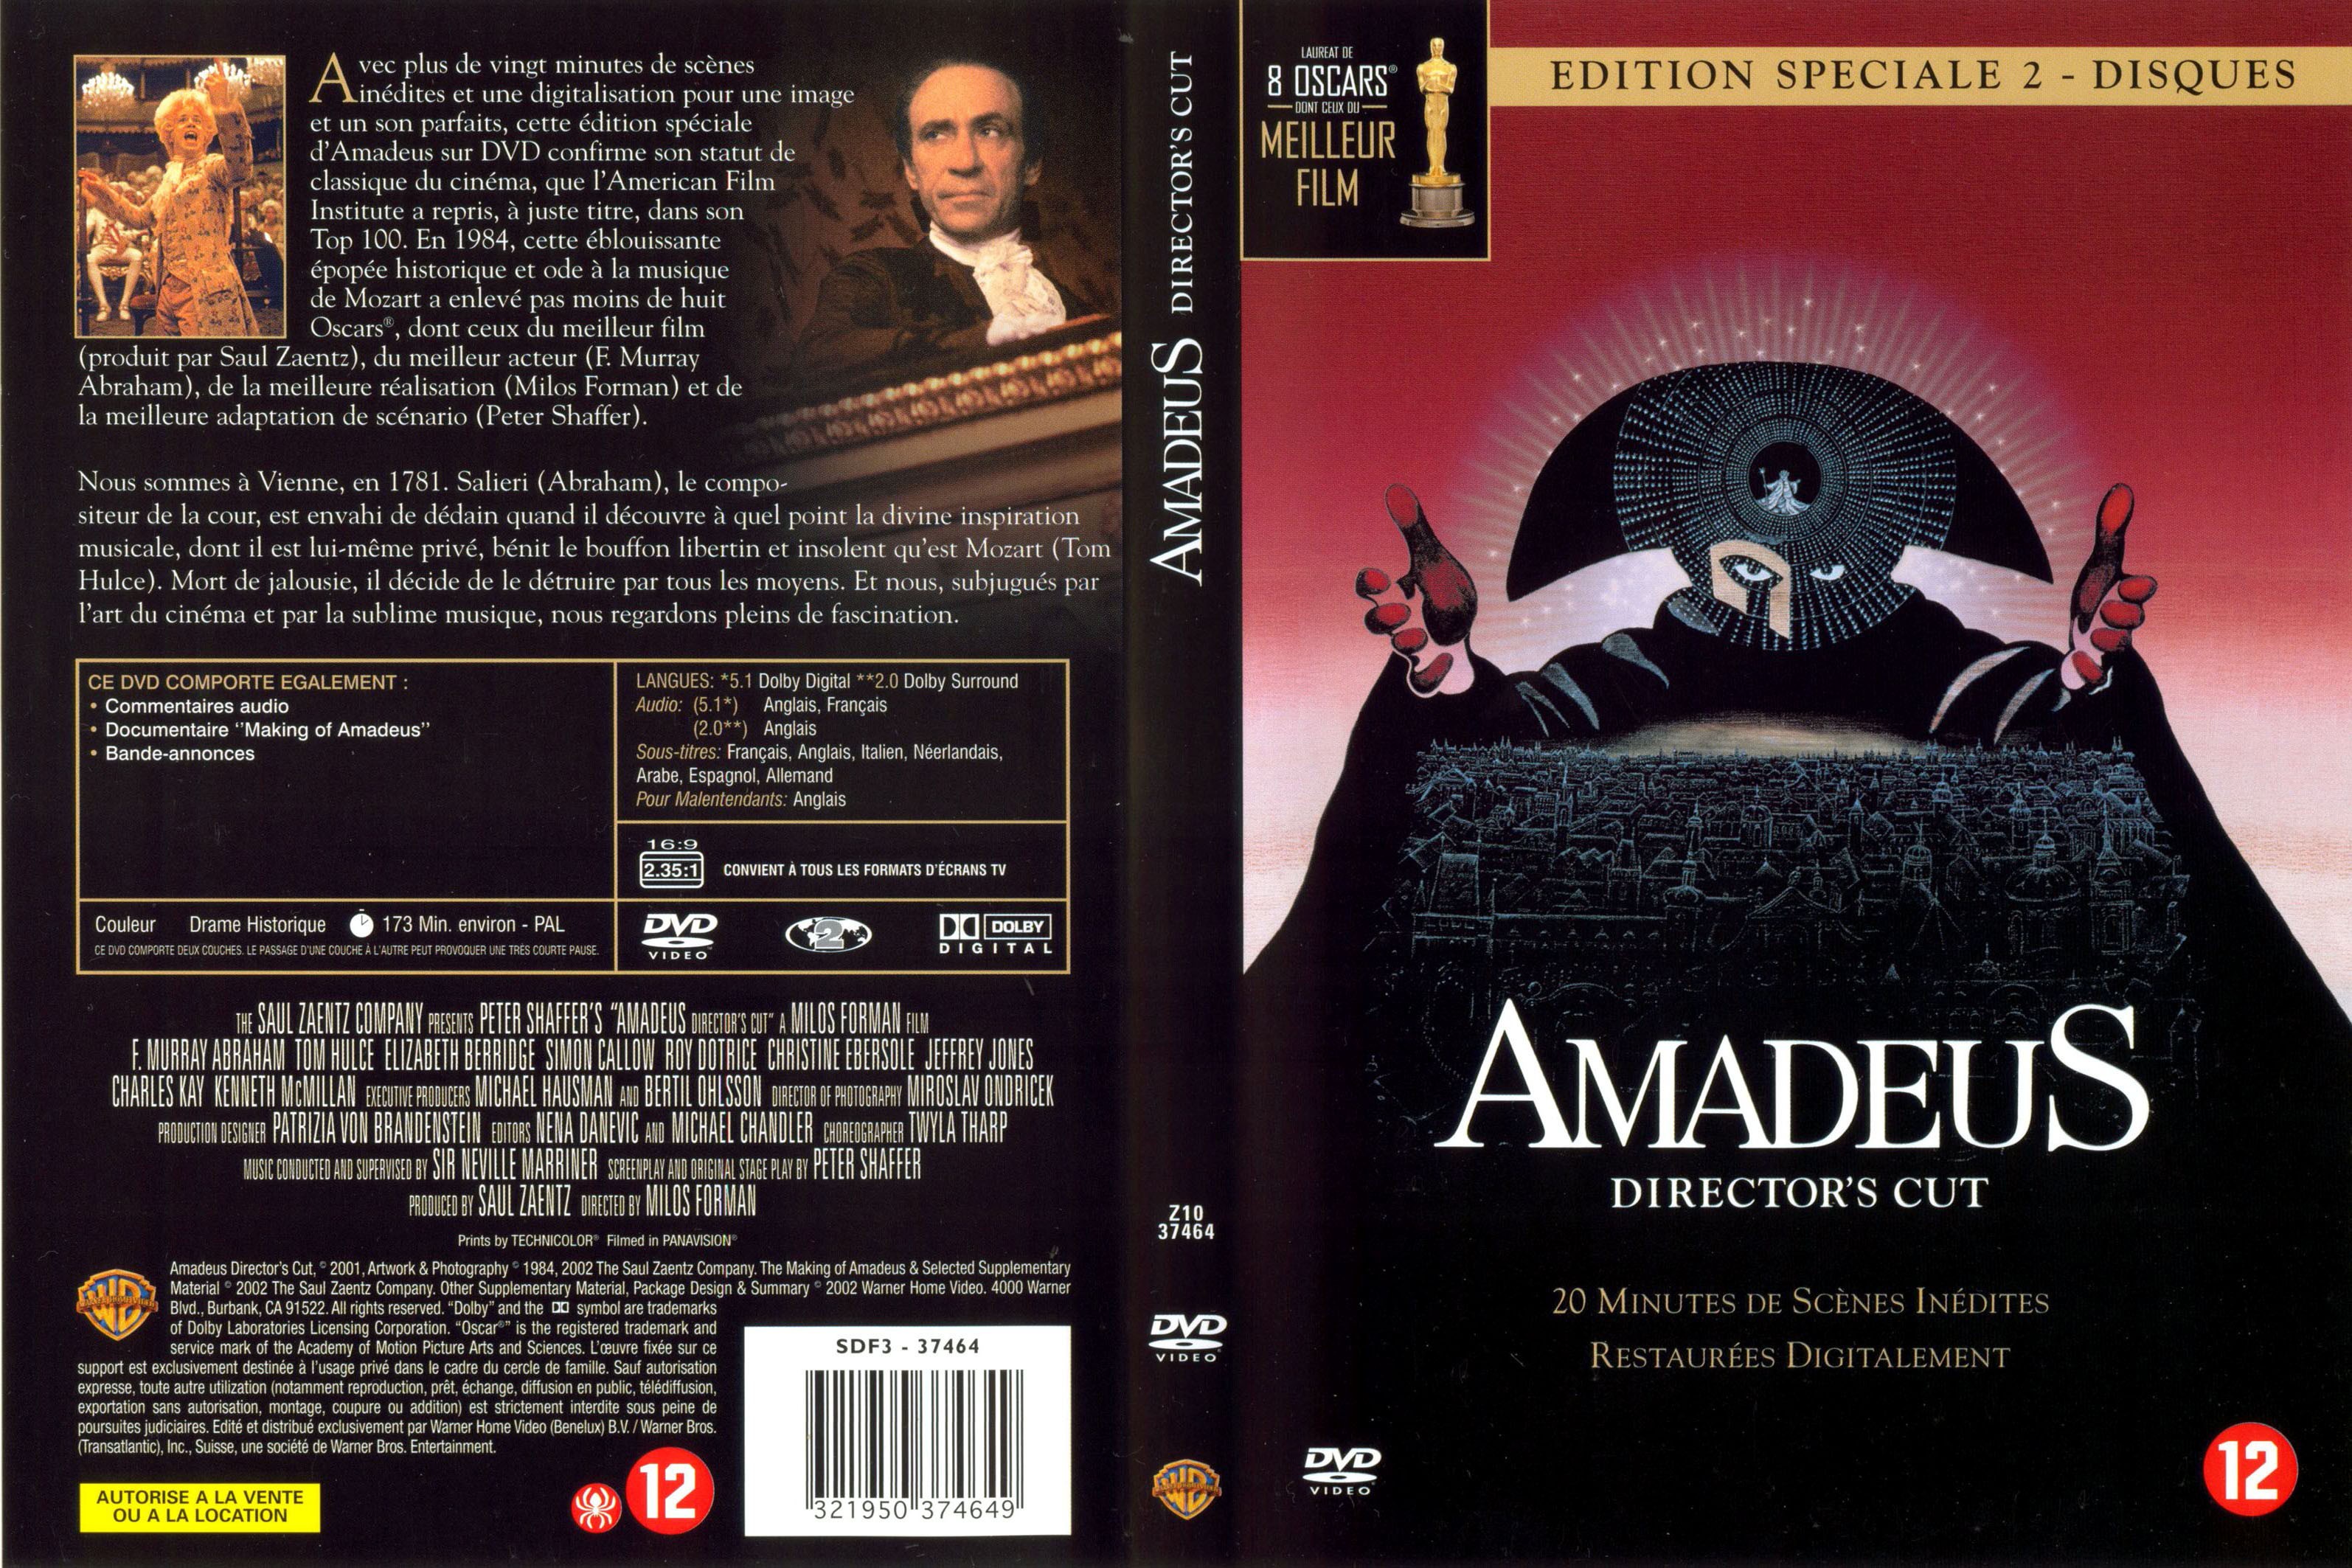 Jaquette DVD Amadeus v2